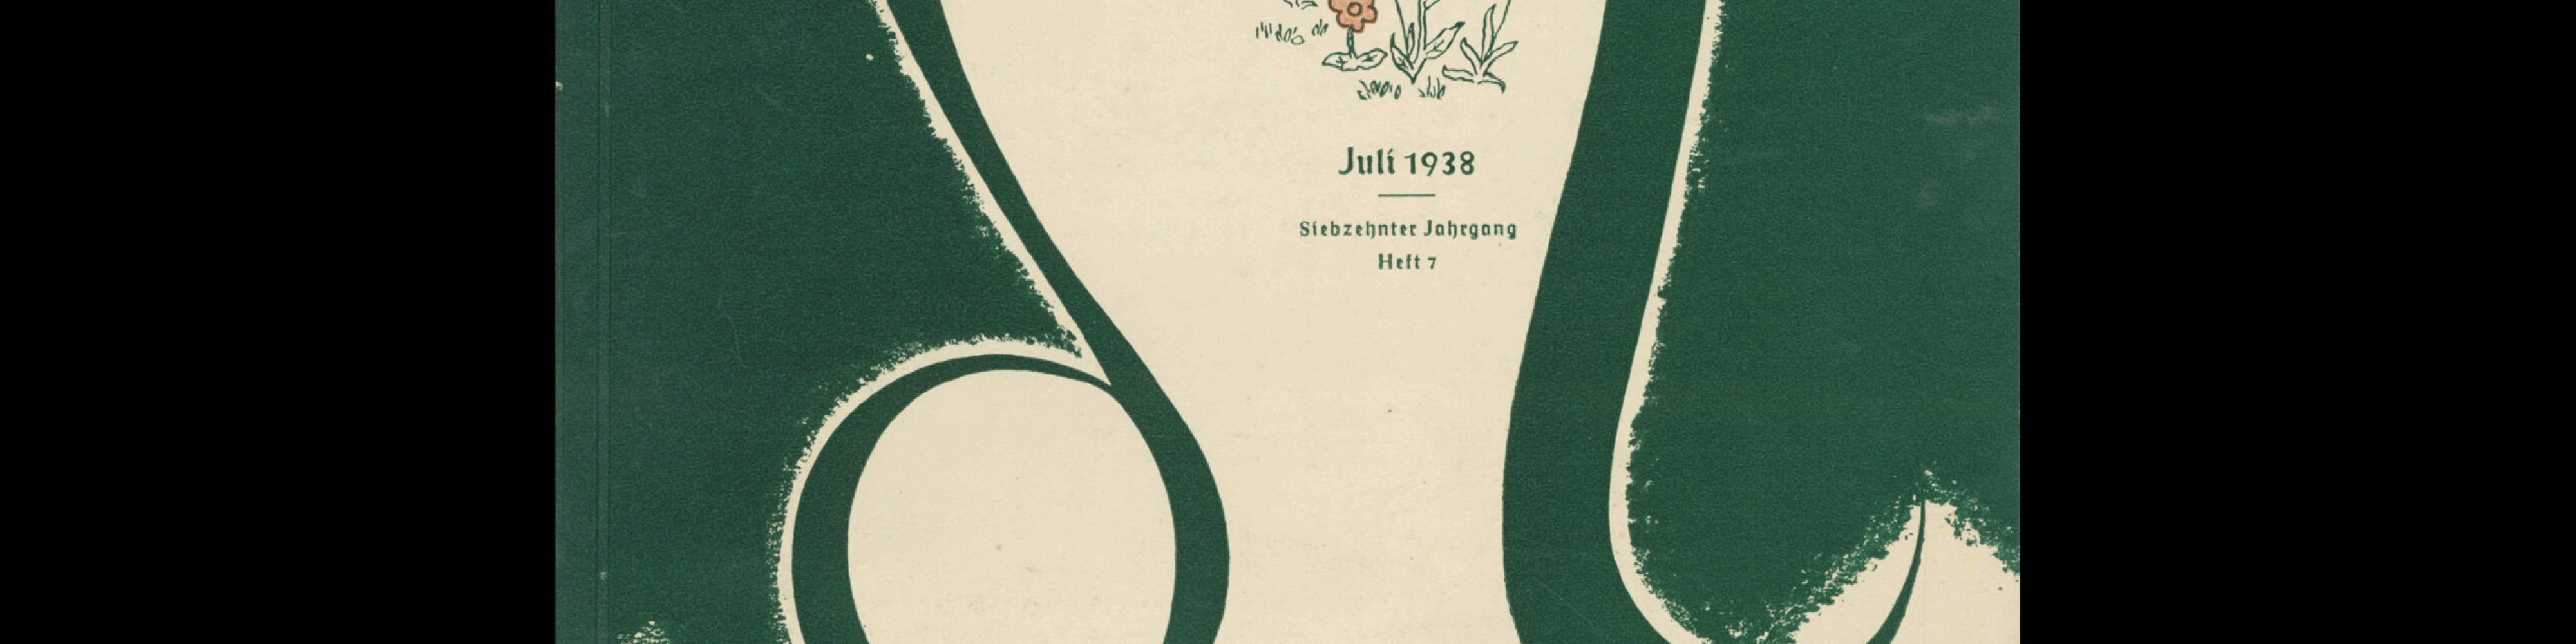 Graphische Nachrichten, Vol 17, July 1938